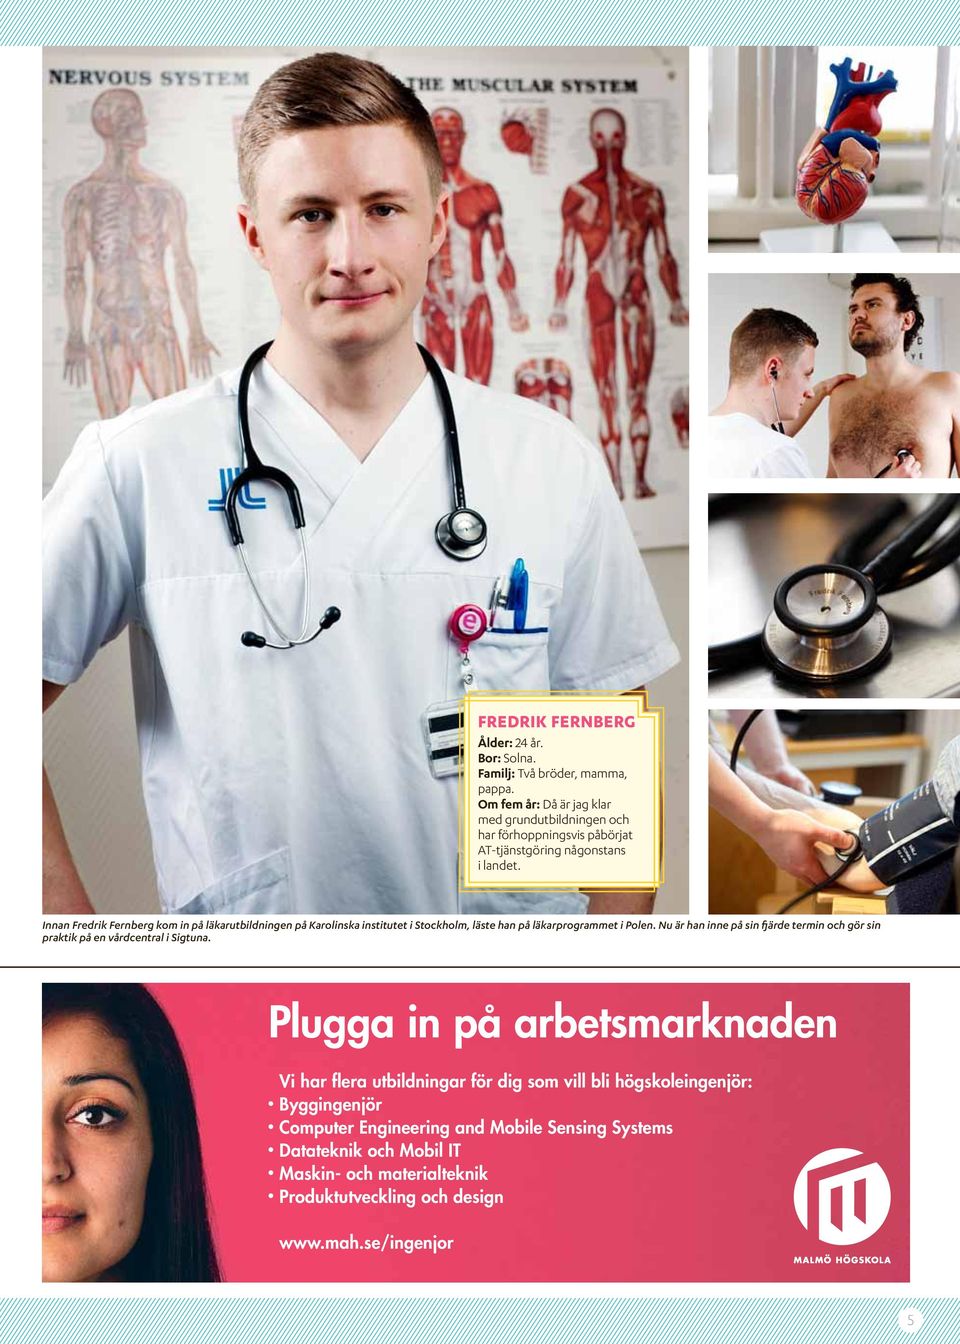 Innan Fredrik Fernberg kom in på läkarutbildningen på Karolinska institutet i Stockholm, läste han på läkarprogrammet i Polen.